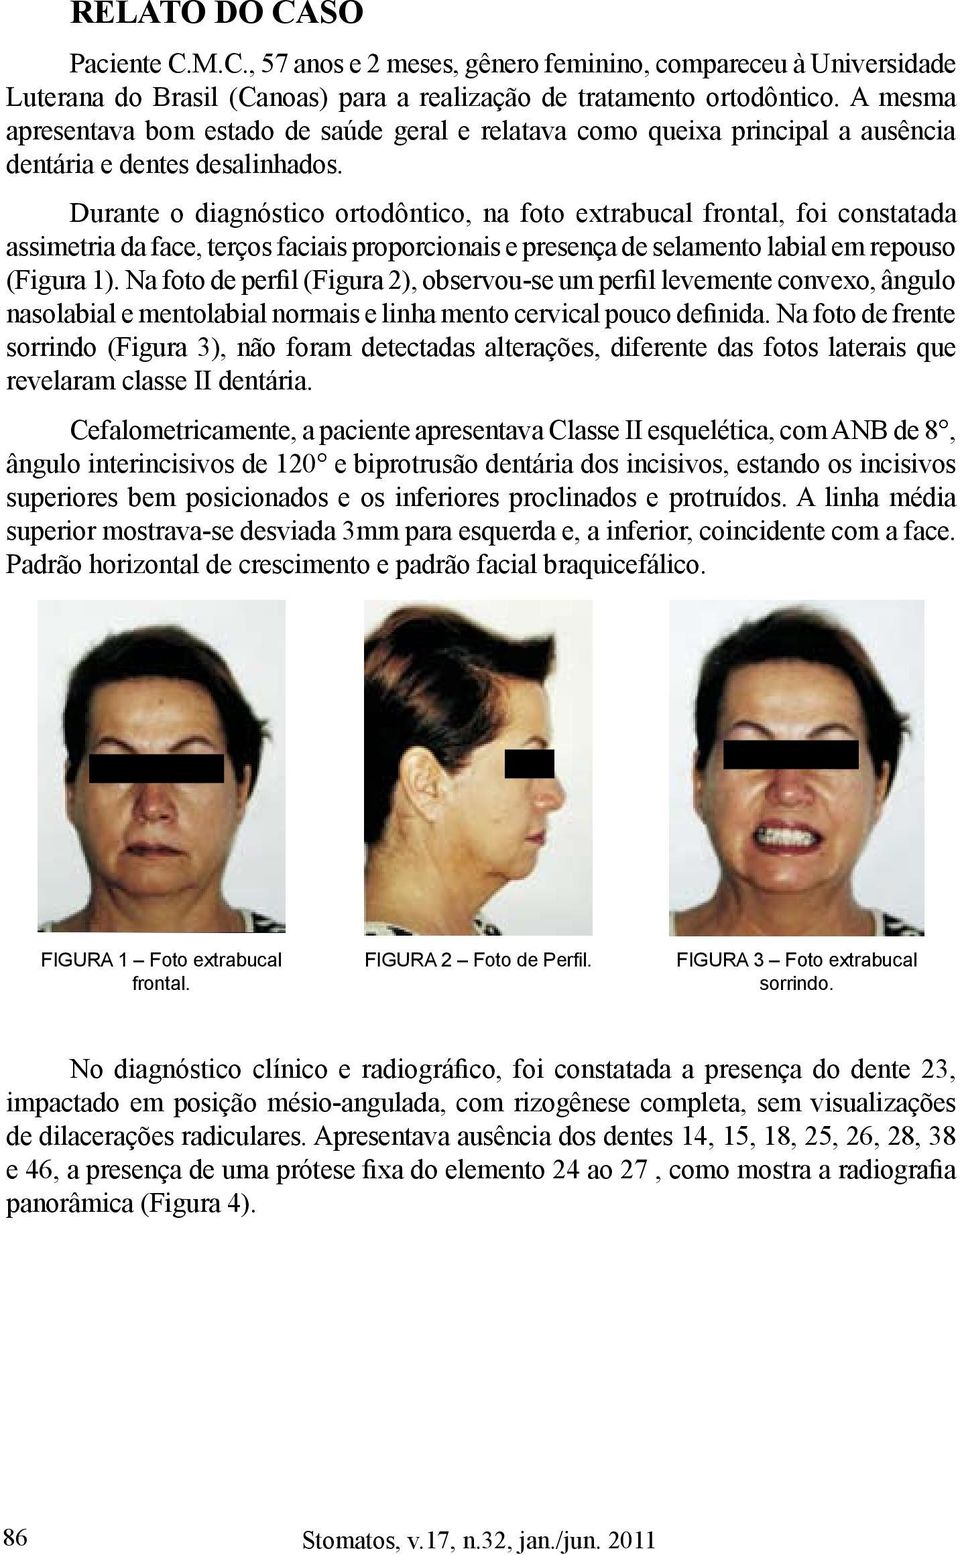 Durante o diagnóstico ortodôntico, na foto extrabucal frontal, foi constatada assimetria da face, terços faciais proporcionais e presença de selamento labial em repouso (Figura 1).